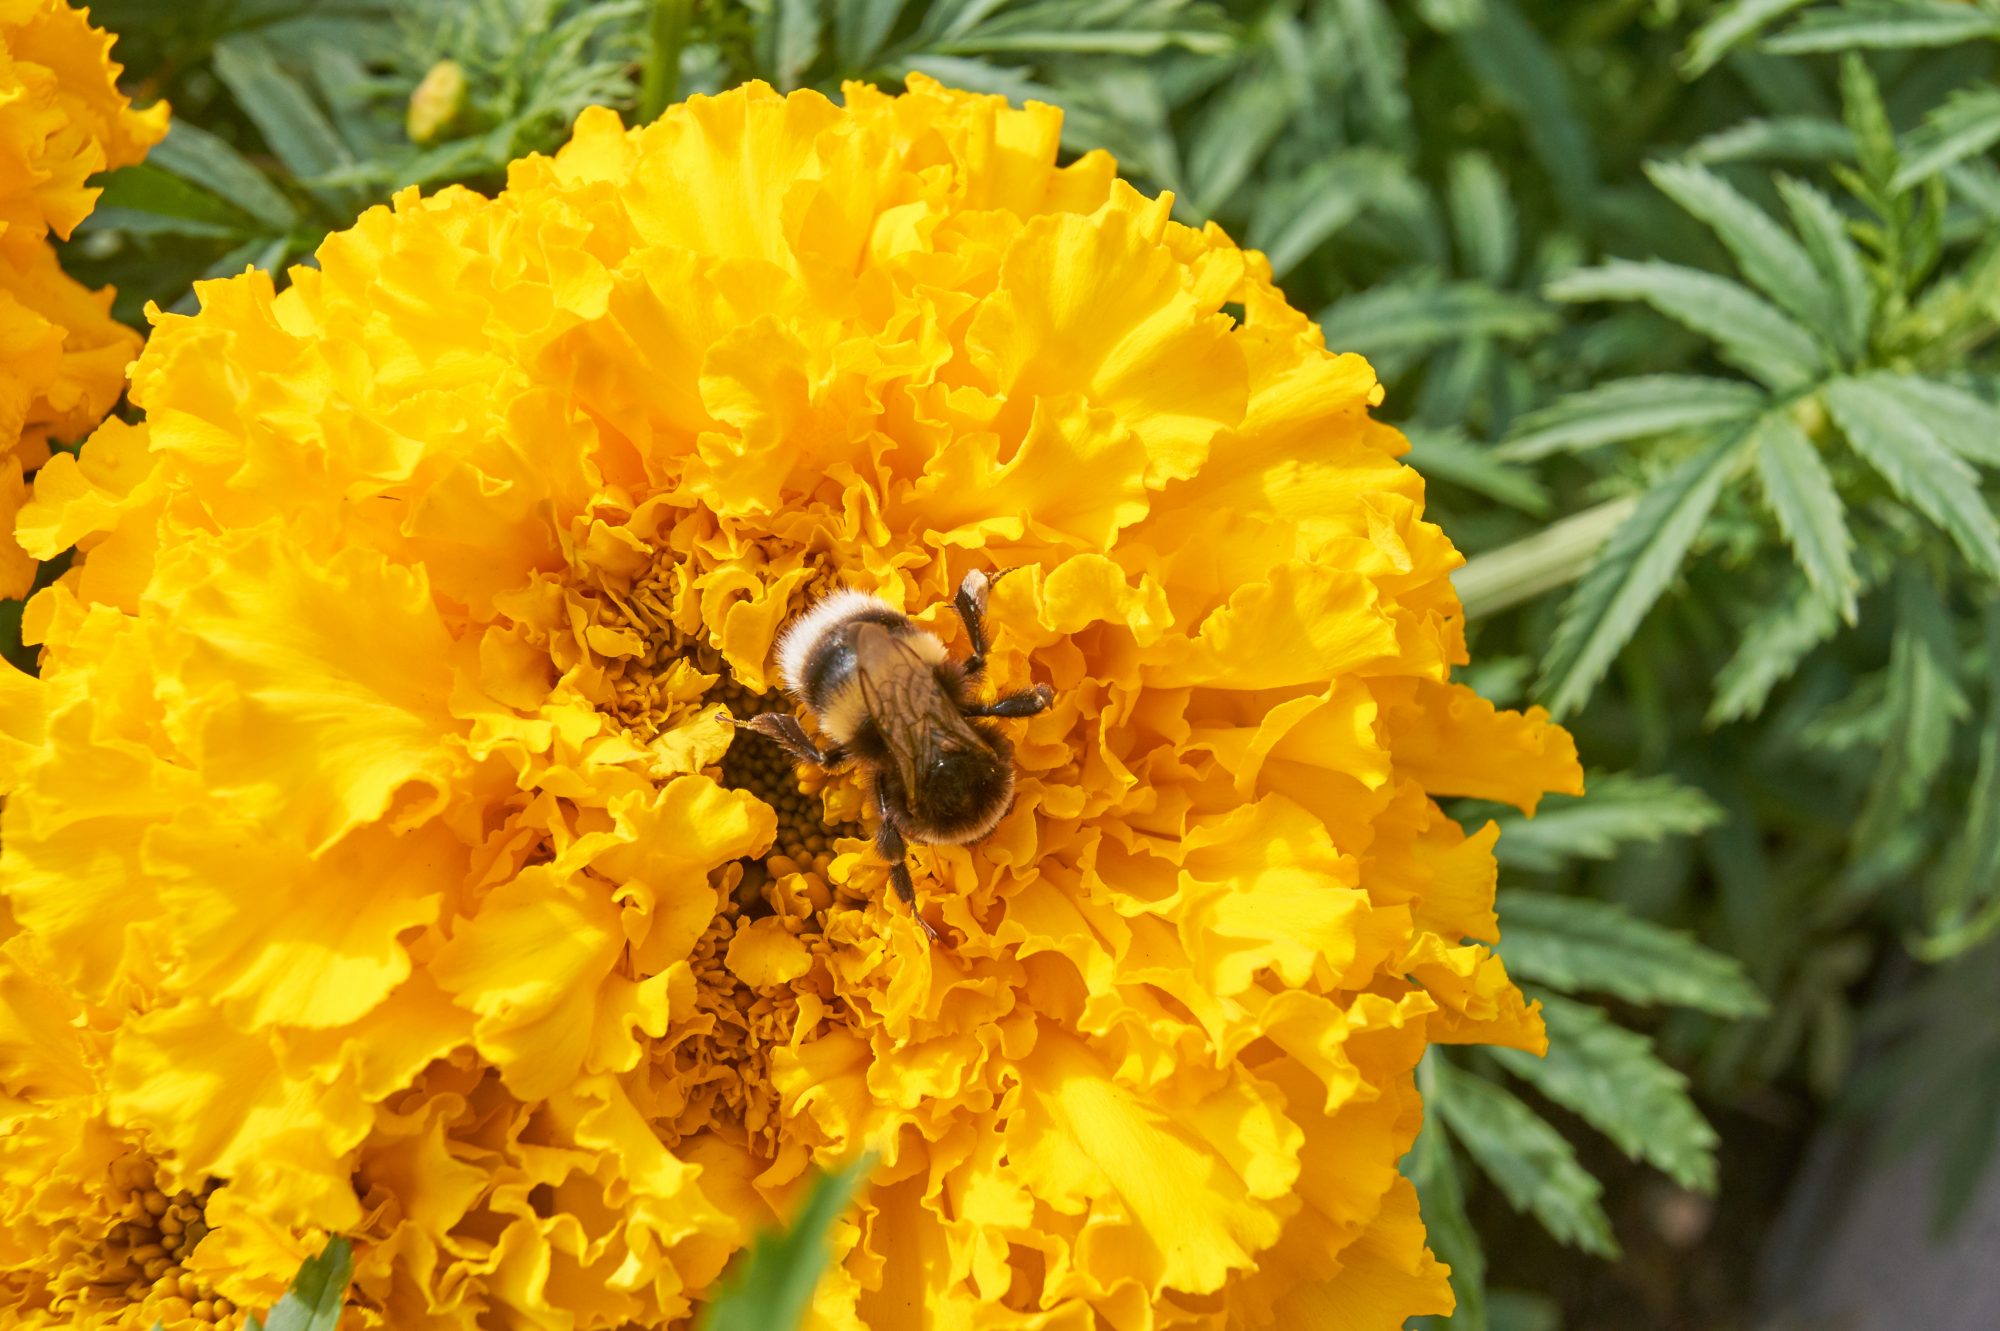 bumble bees need biodiversity, technical university of munich